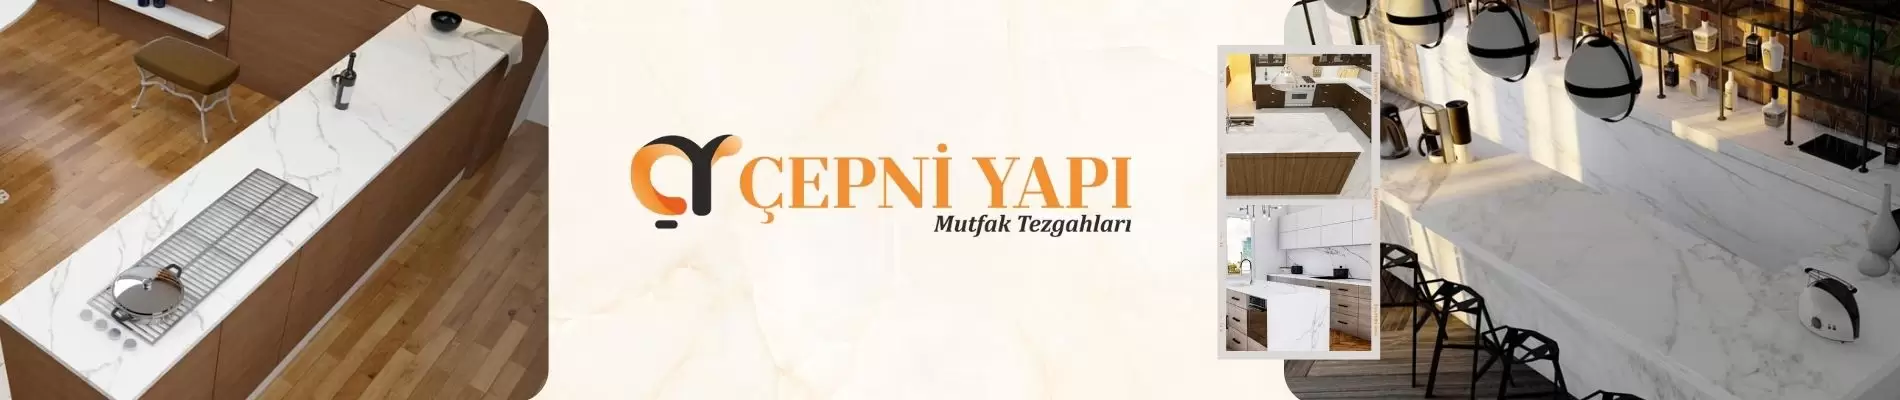 "ÇEPNİ YAPI®: Mutfak Tezgahı Üretiminde Kalite, Garanti ve Ücretsiz Keşif Hizmeti"
